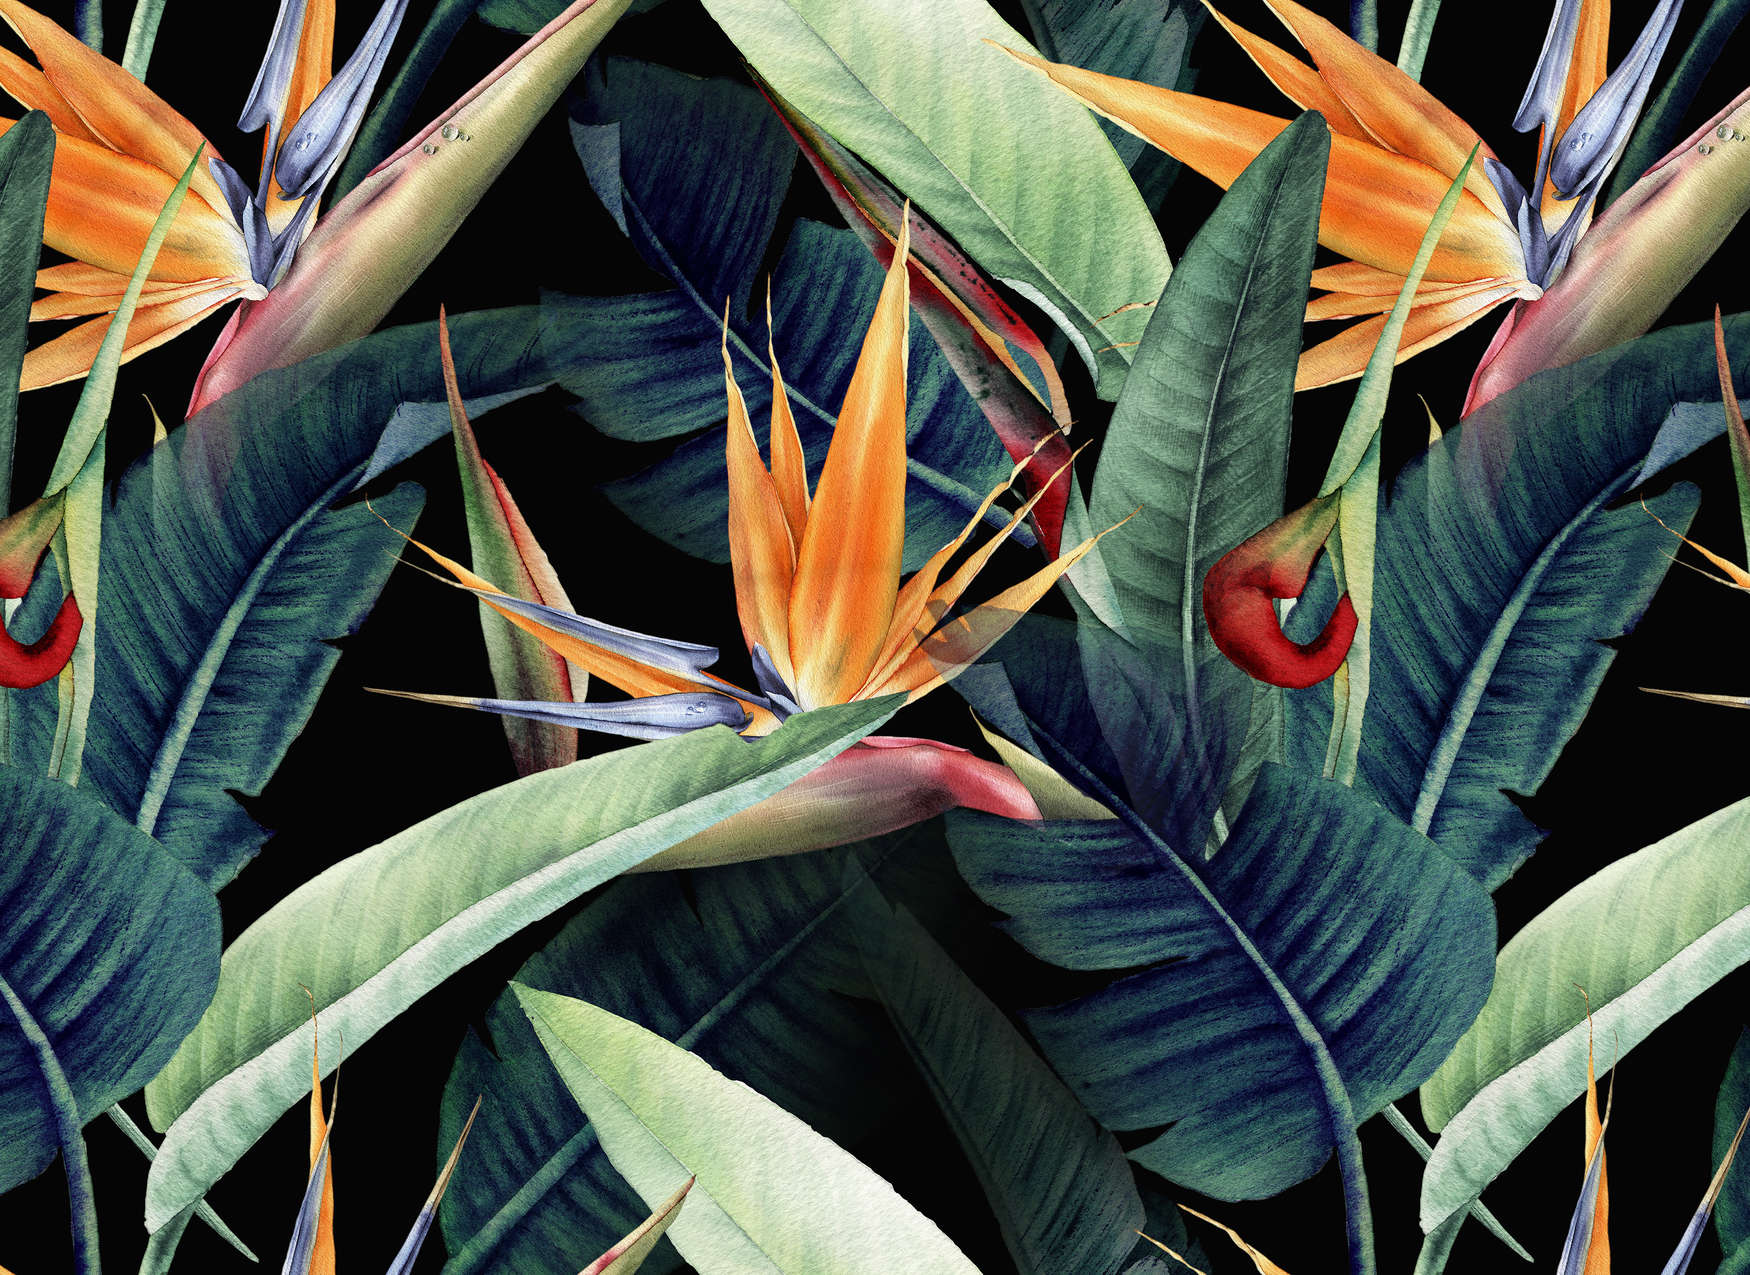             Digital behang Jungle motief geschilderd met bladeren - Groen, Oranje, Bont
        